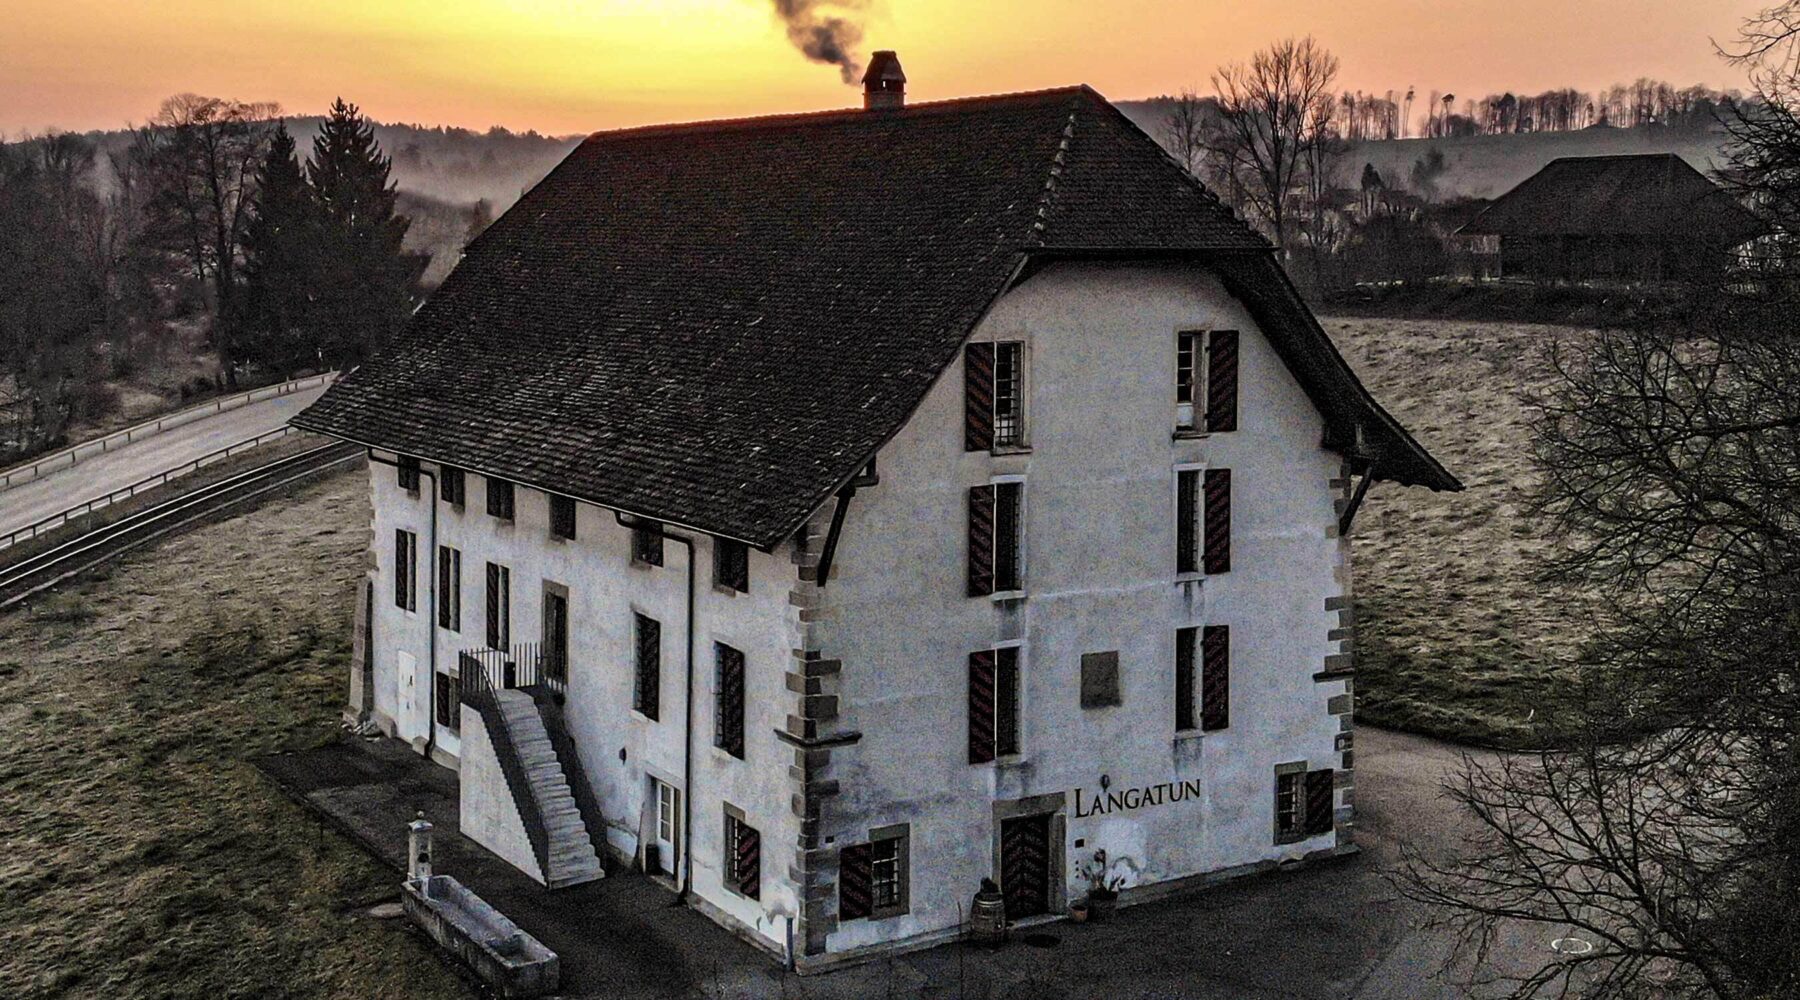 The Langatun "Swiss Whisky Distillery", Aarwangen